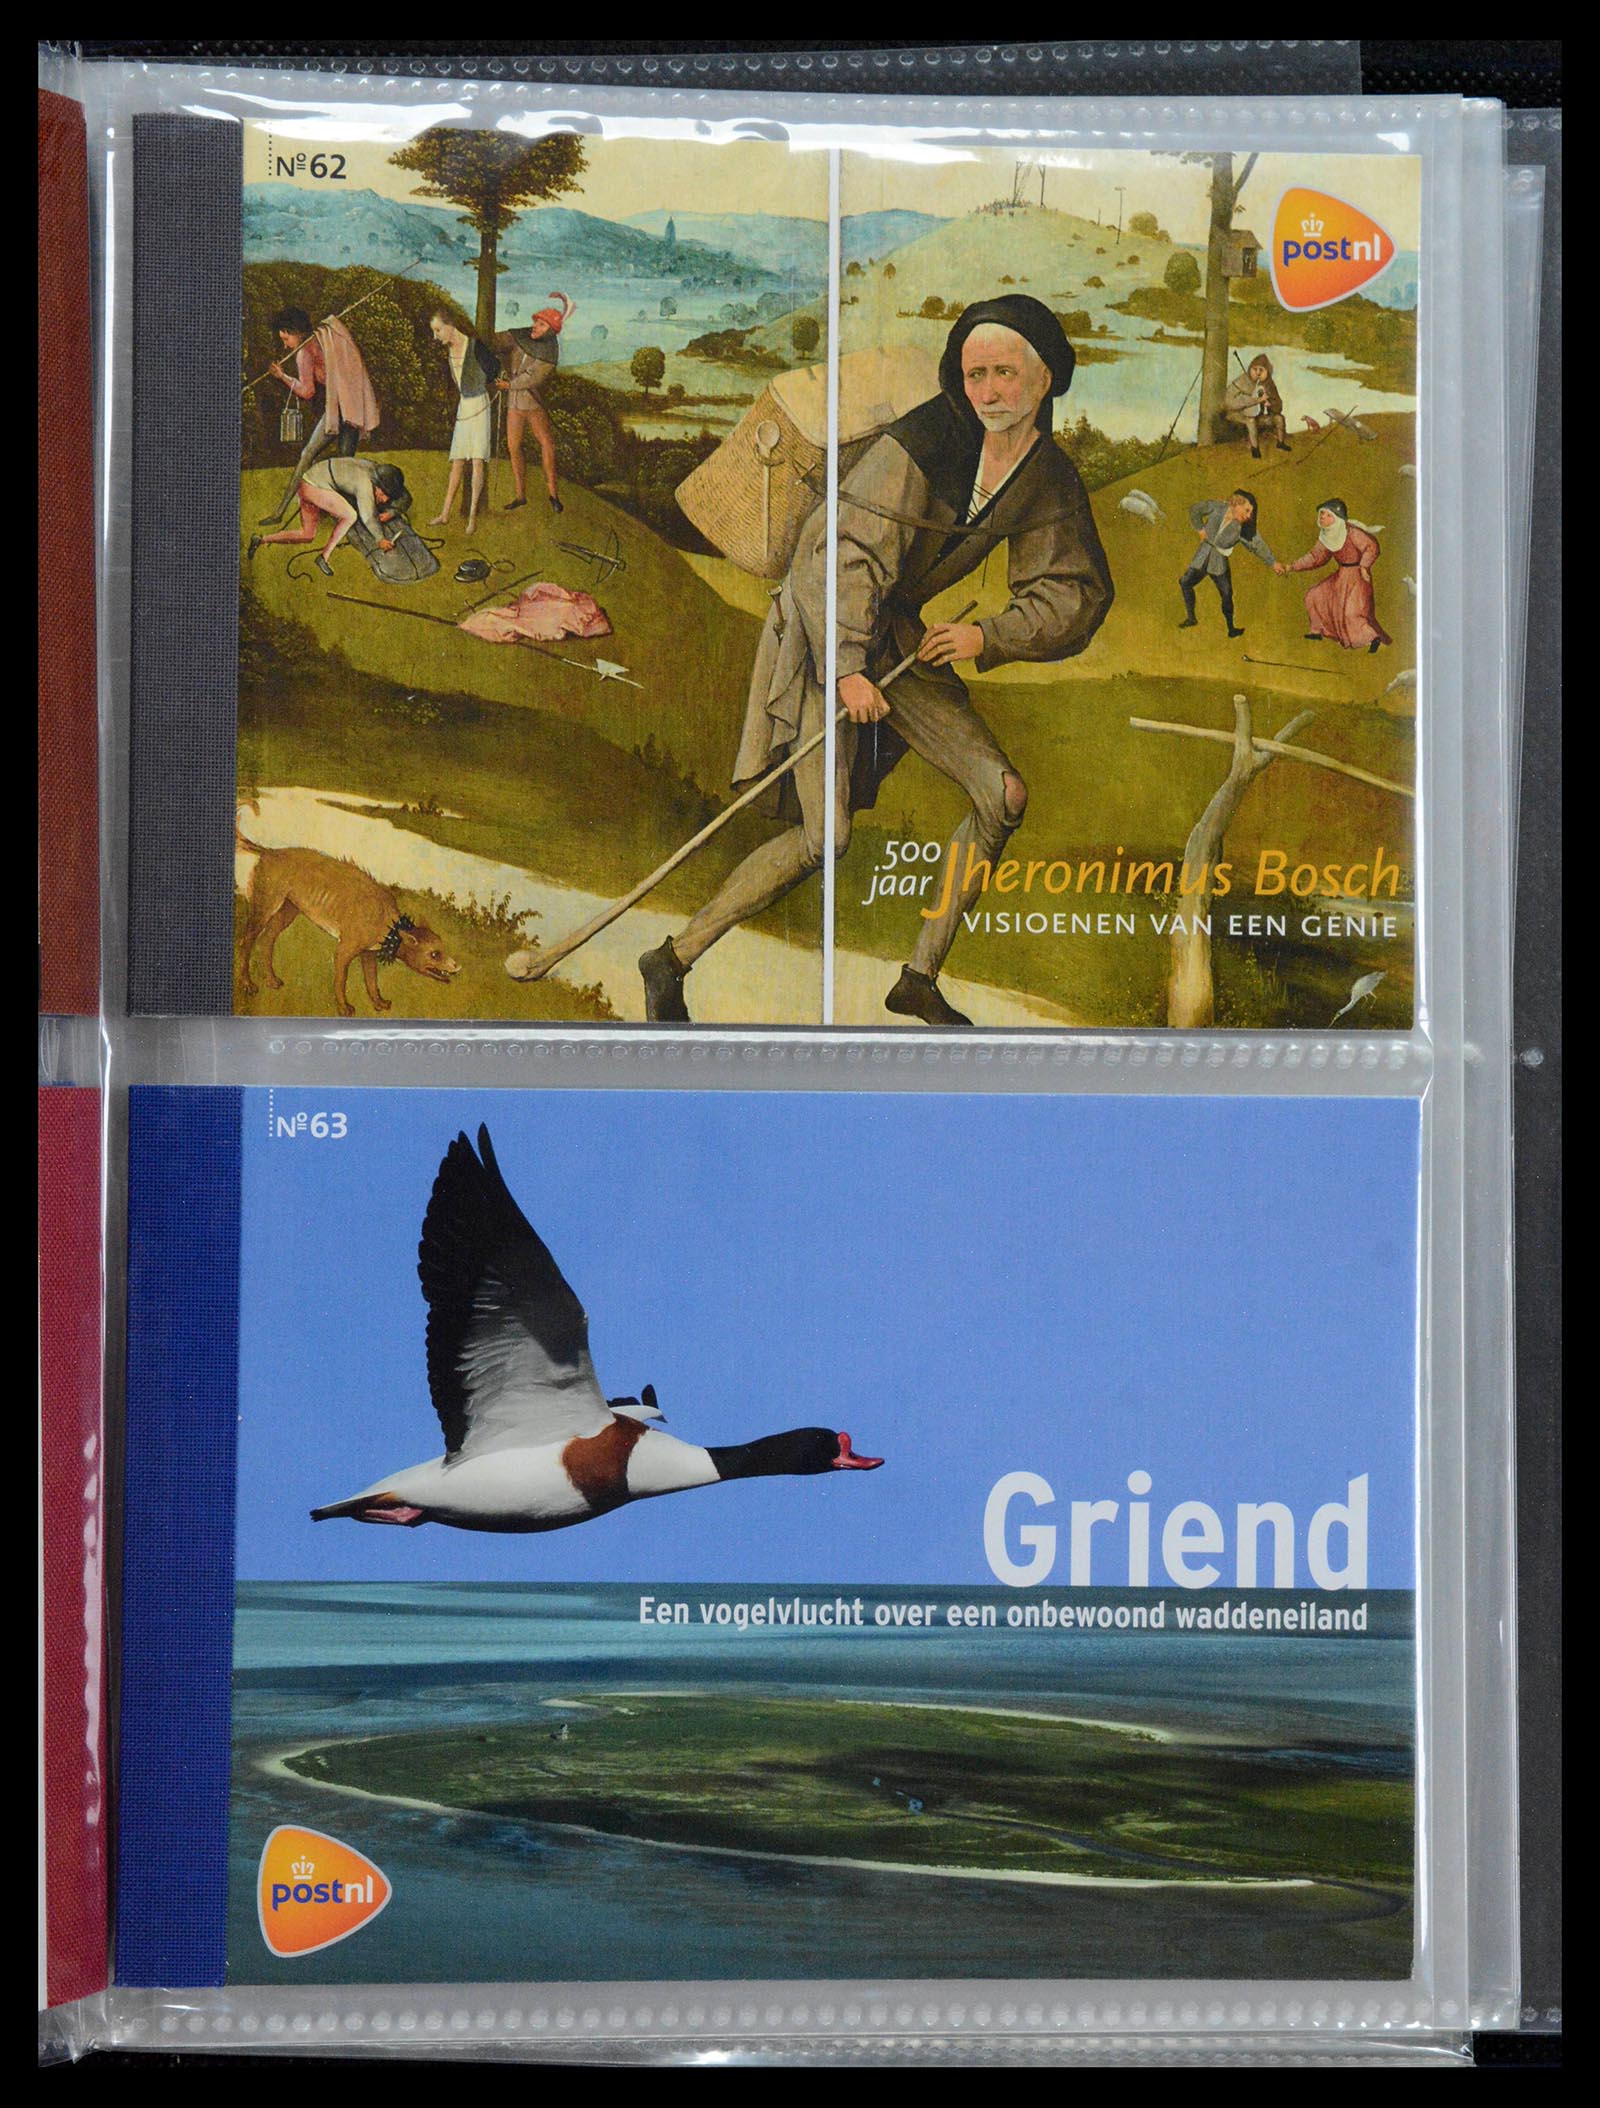 39018 0032 - Stamp collection 39018 Netherlands prestige booklets 2003-2016.